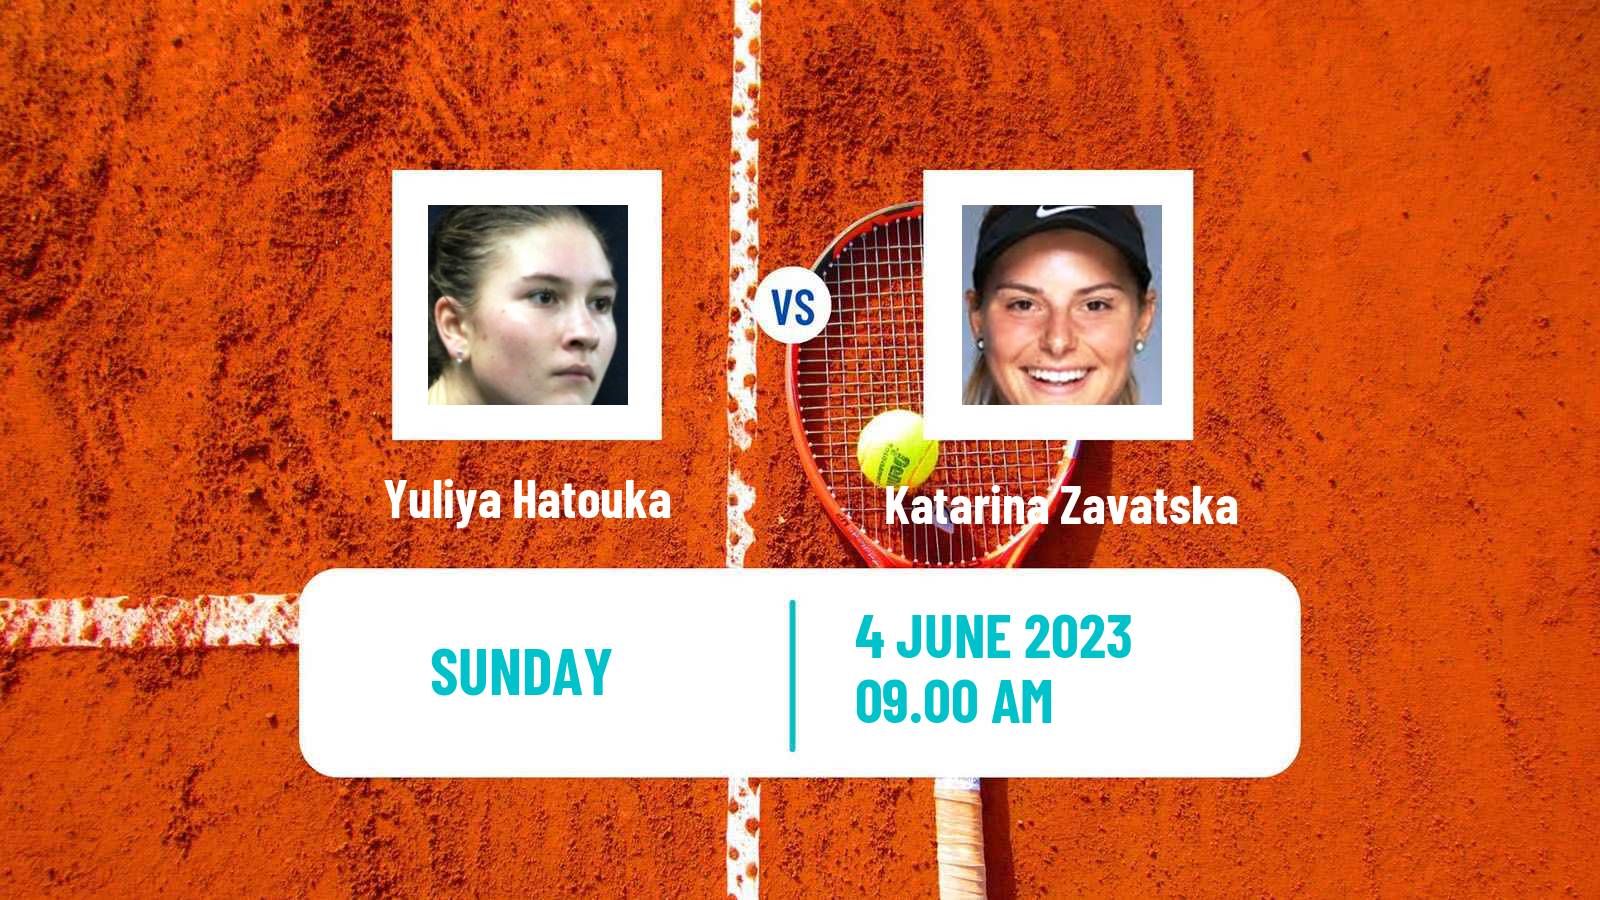 Tennis ITF W60 Brescia Women Yuliya Hatouka - Katarina Zavatska